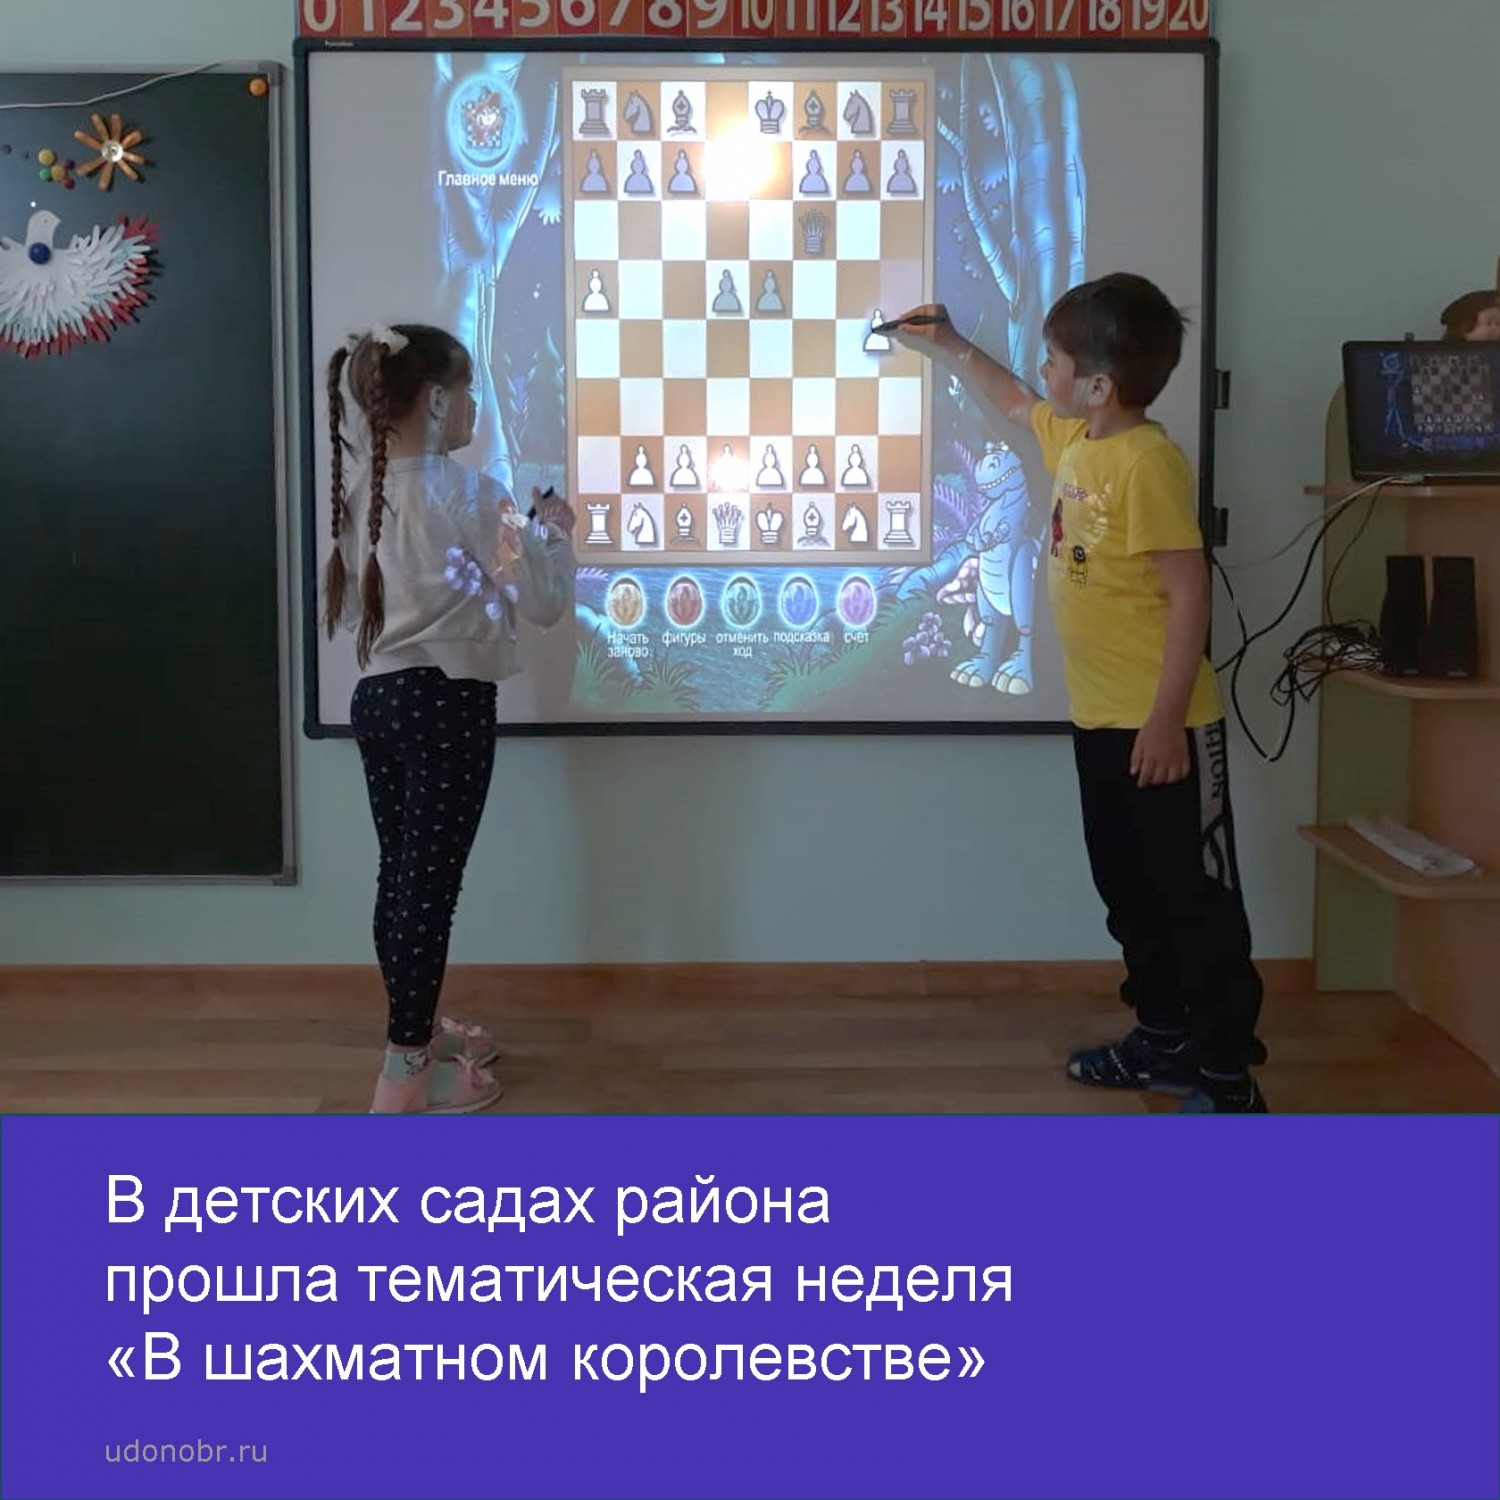 В детских садах Усть–Донецкого района прошла тематическая неделя «В шахматном королевстве».